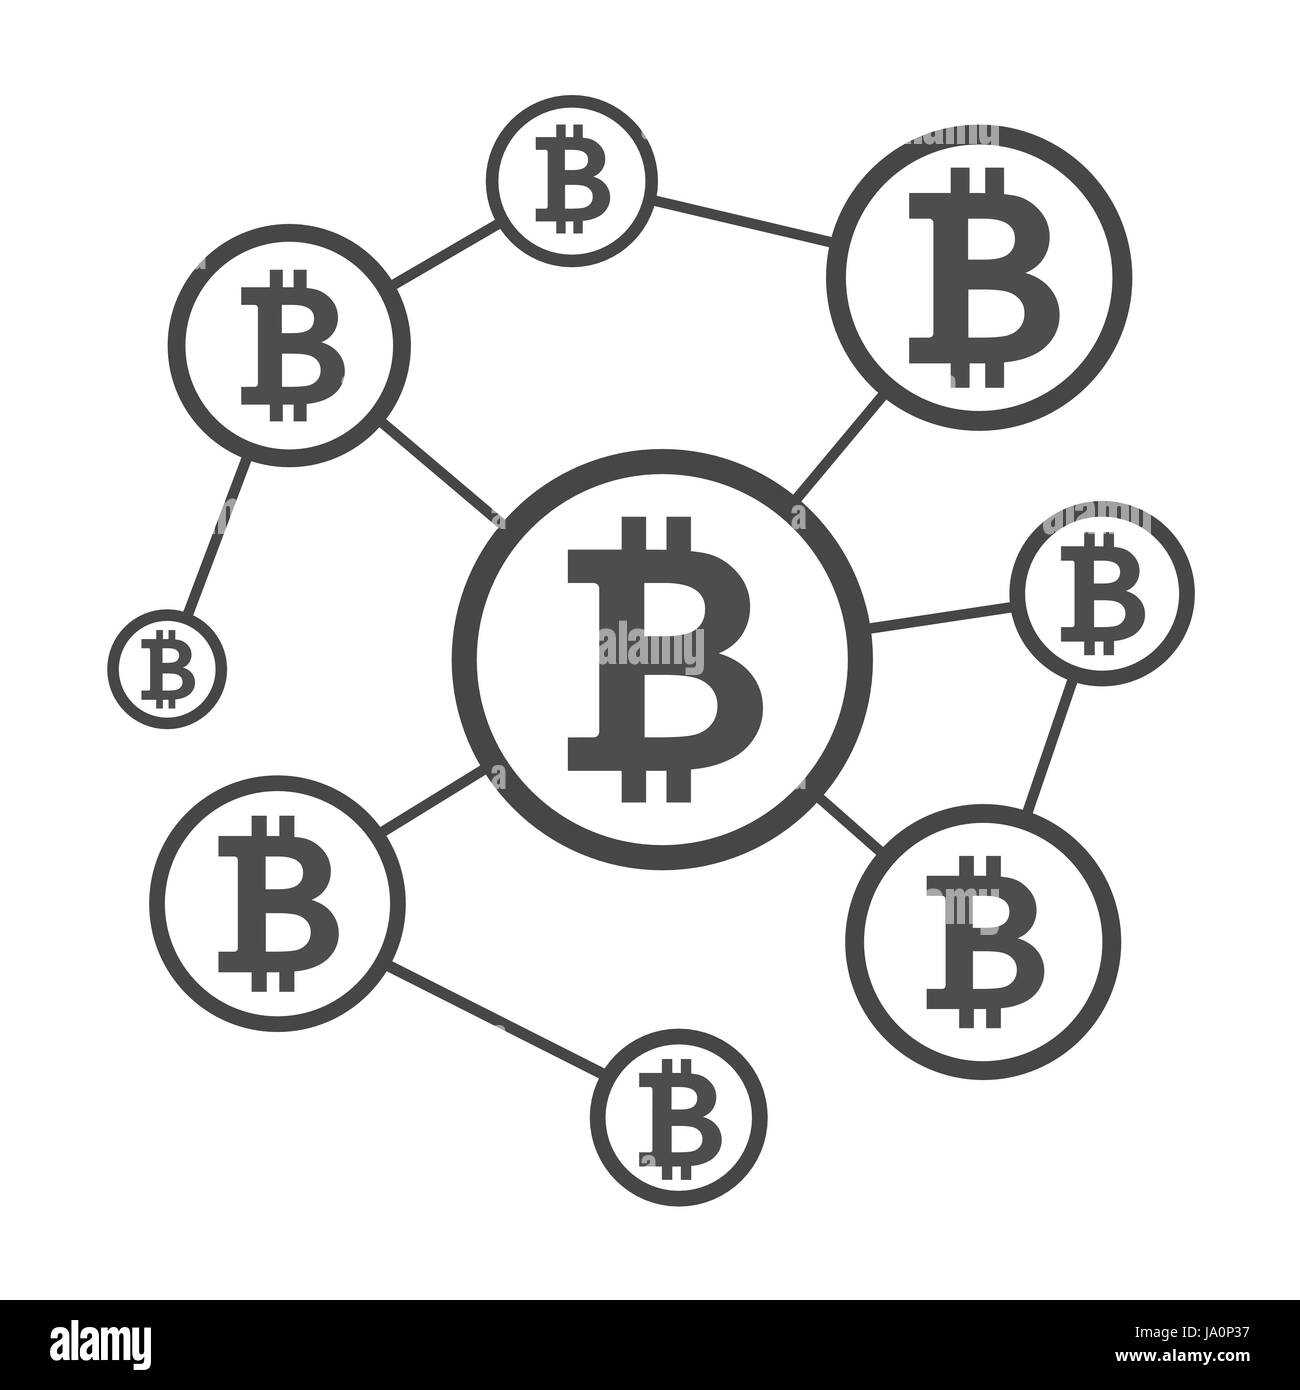 Blockchain network scheme Stock Vector